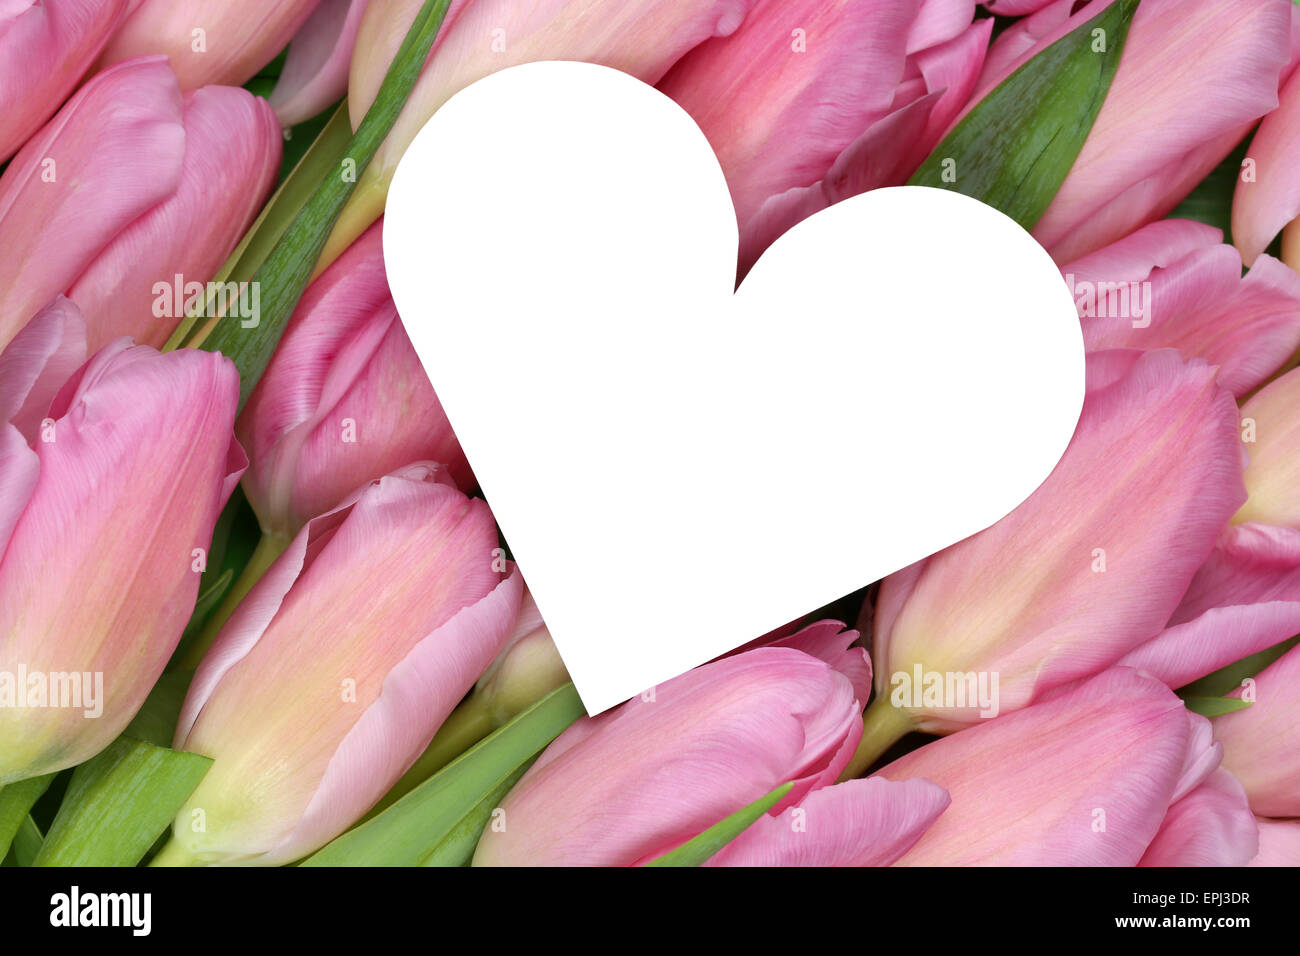 Tulpen Blumen mit Herz símbolo als der liebe zum Valentinstag Muttertag oder Foto de stock